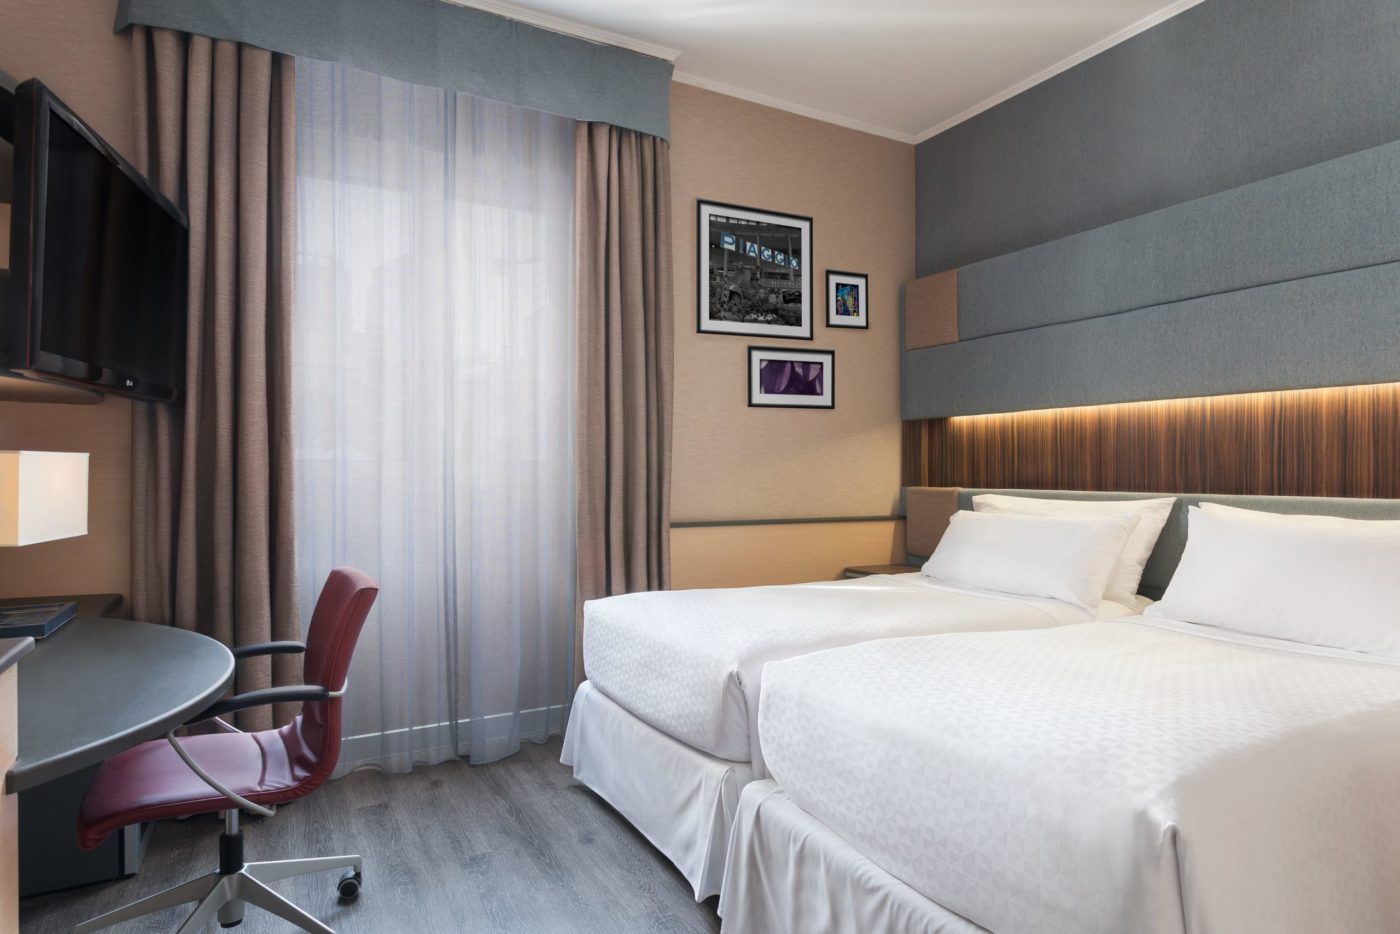 La camera di un hotel di Milano sta le città che vivono un vero e proprio stato di crisi